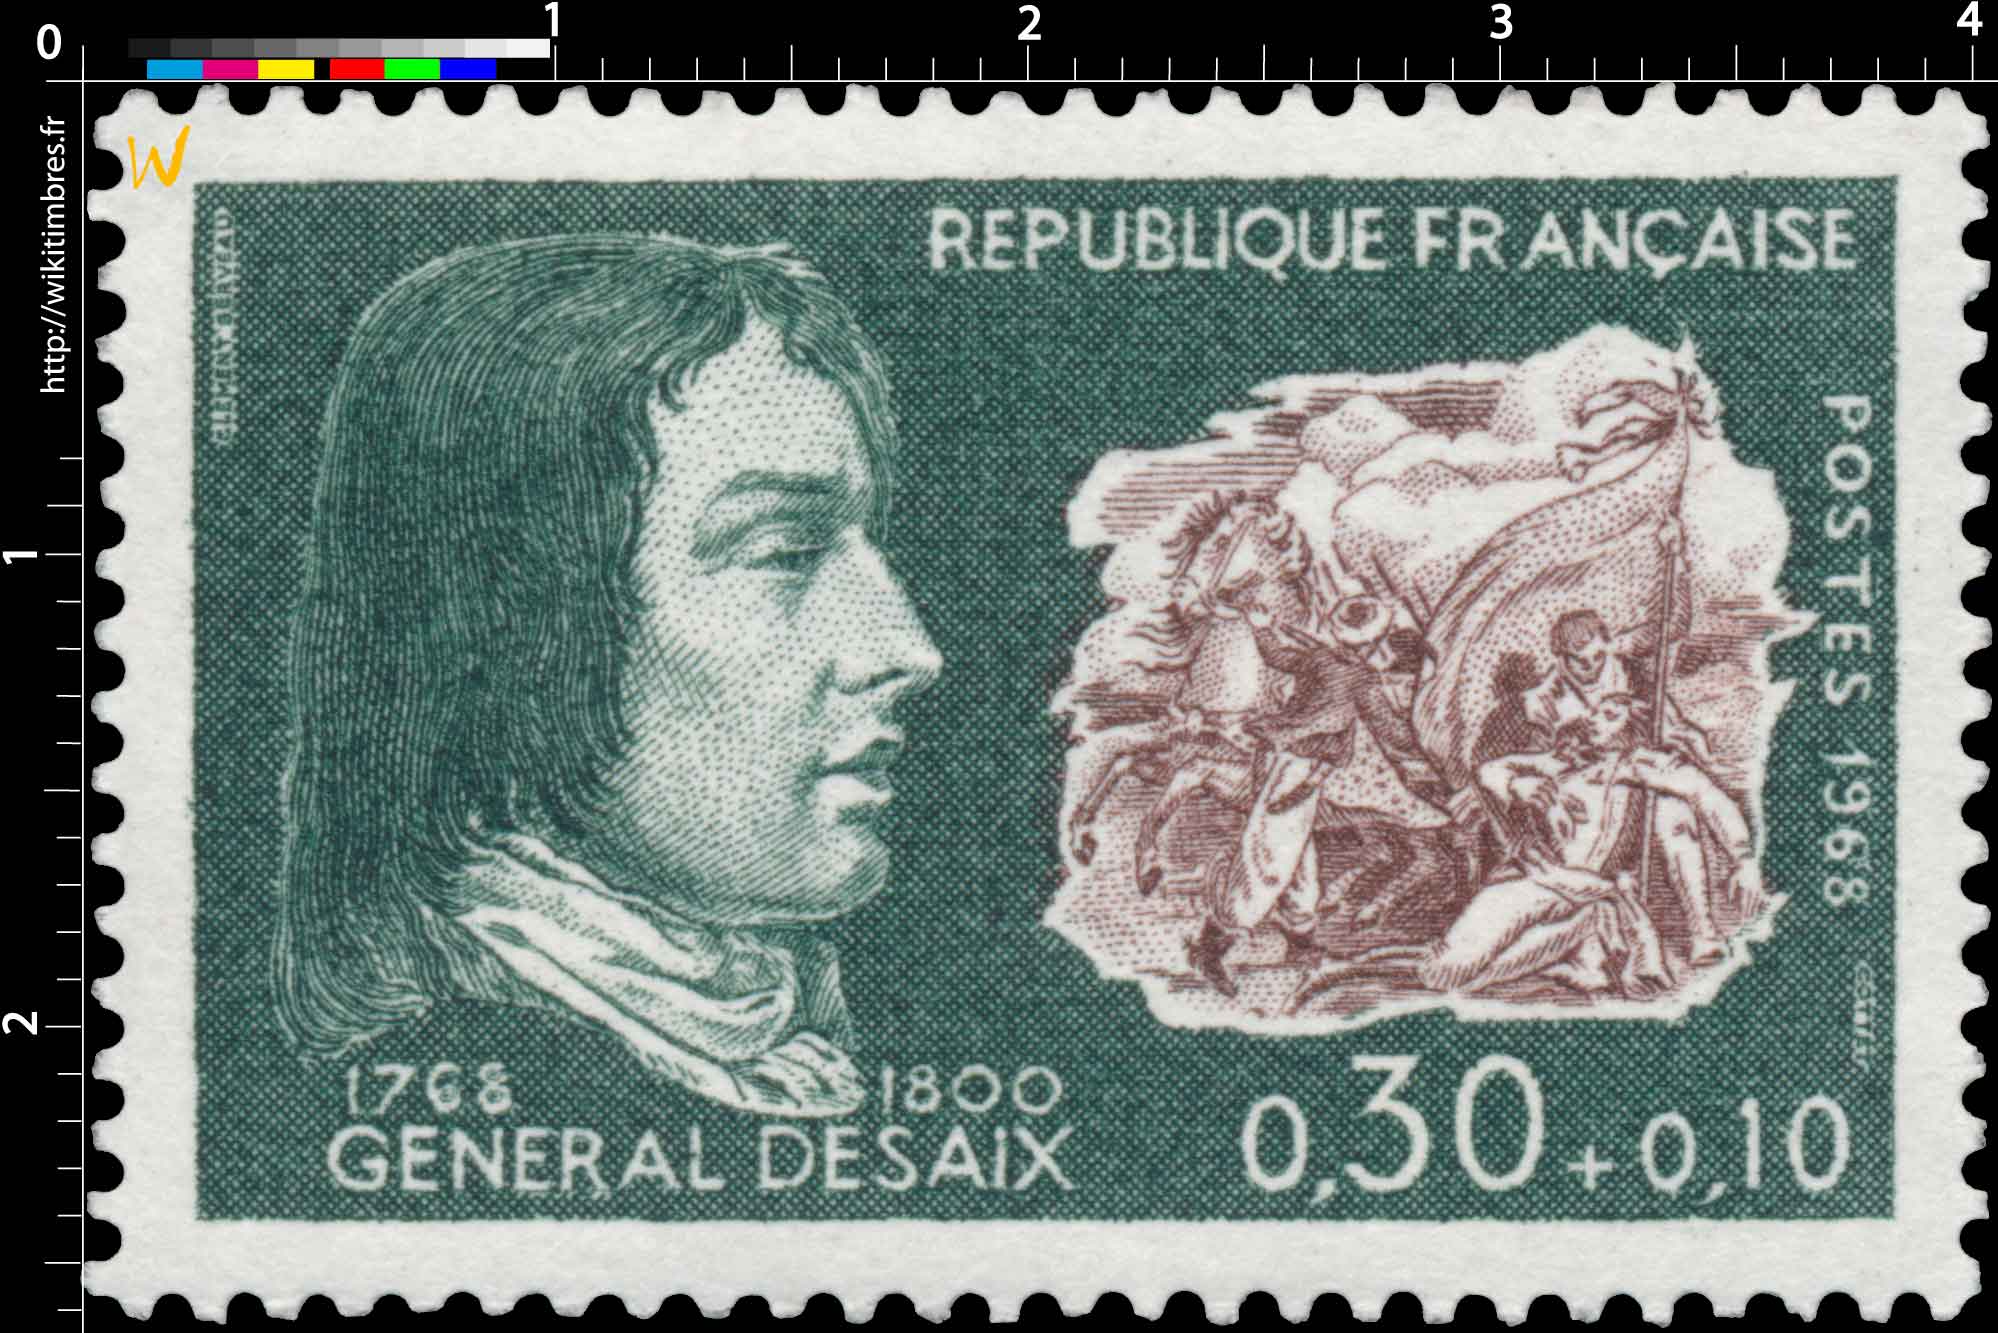 1968 GÉNÉRAL DESAIX 1768-1800